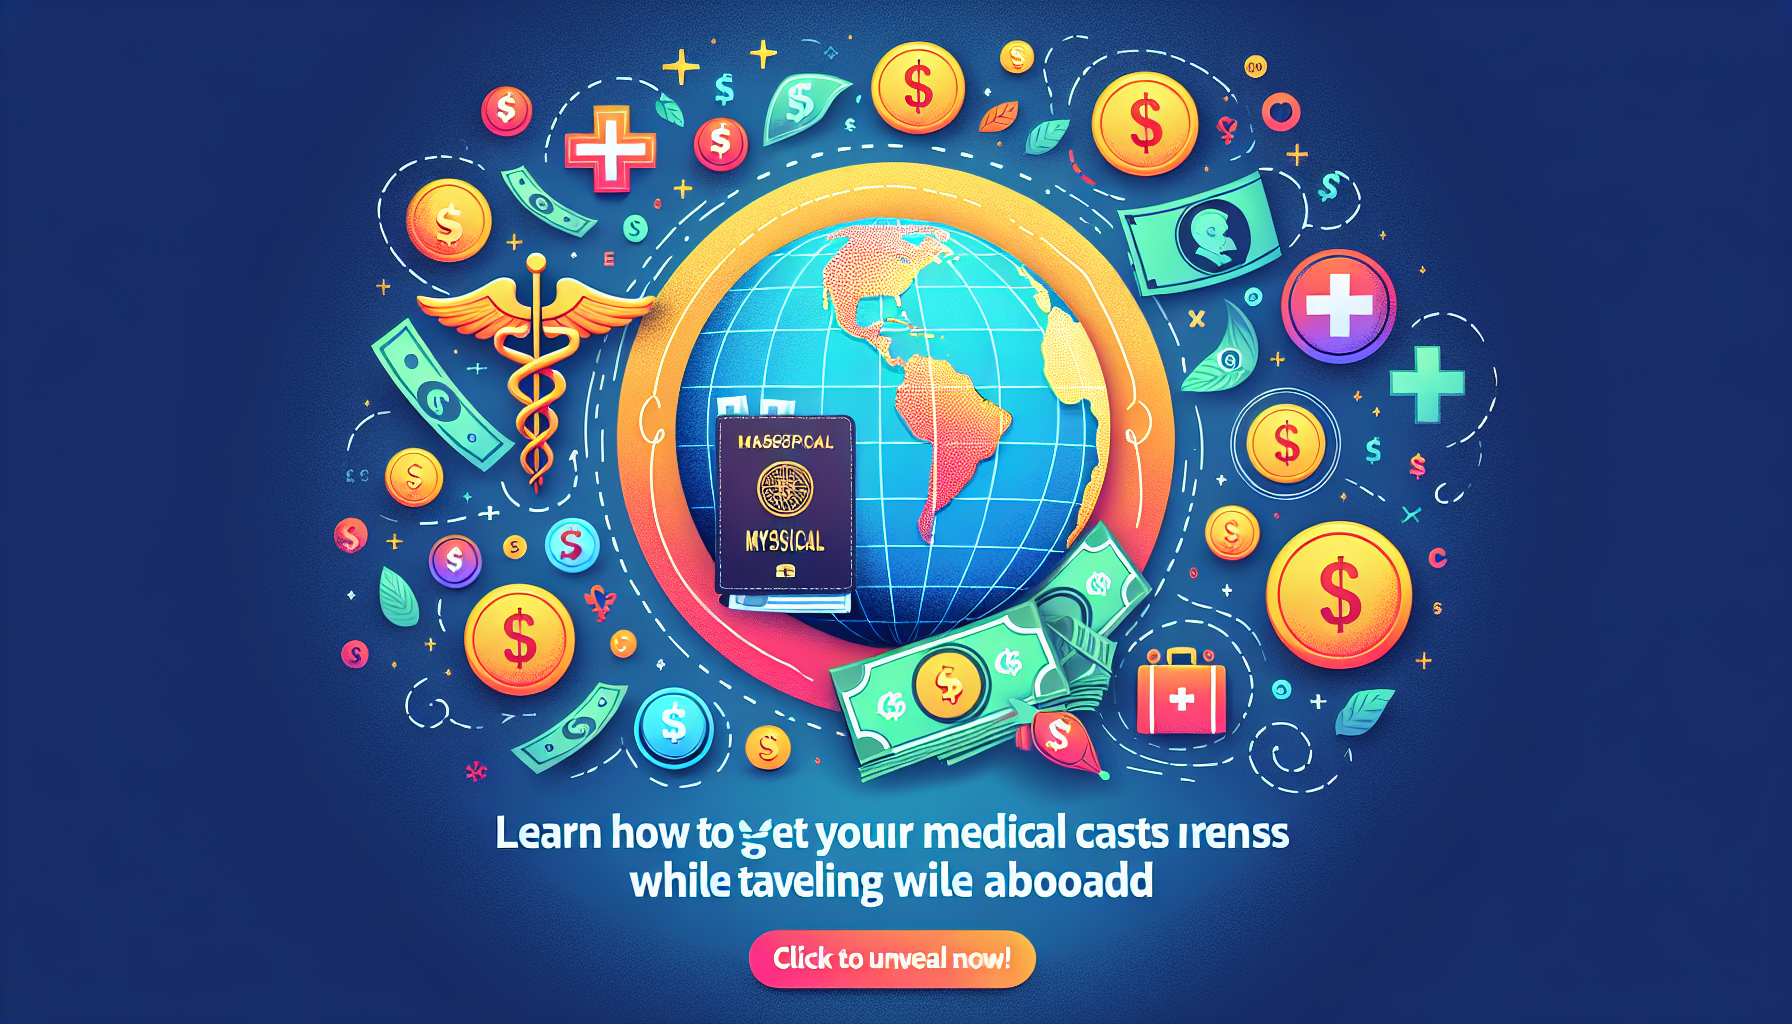 découvrez comment fonctionne le remboursement des soins médicaux à l'étranger et comprenez les étapes pour bénéficier d'un remboursement adéquat de vos frais médicaux à l'étranger.